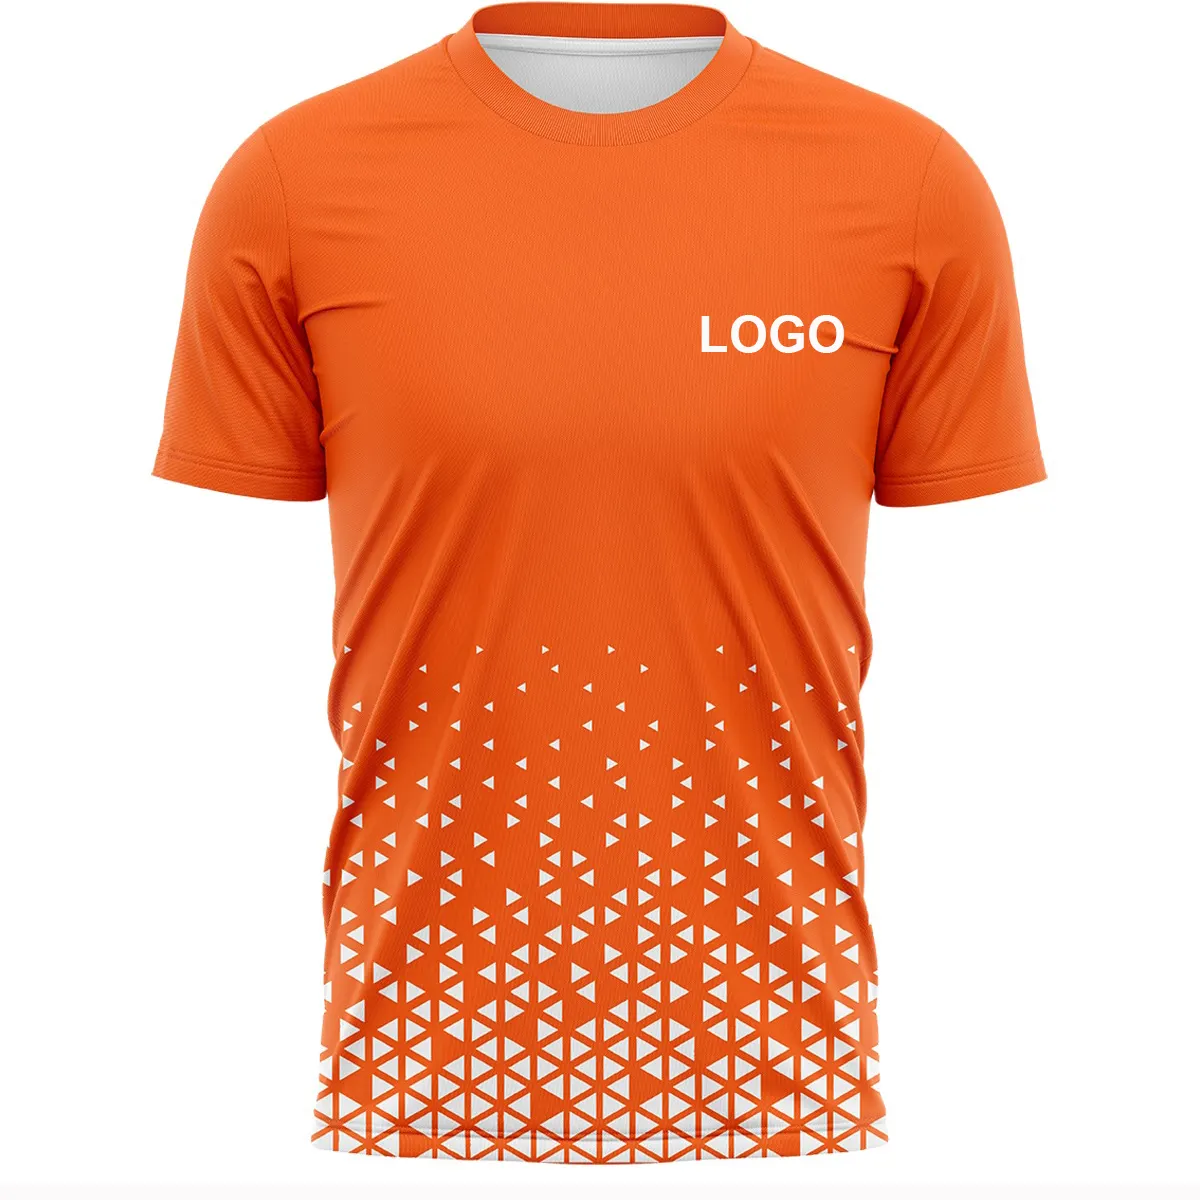 Ropa deportiva de alta calidad, camisetas de fútbol con impresión por sublimación, manga corta, diseño personalizado, camiseta de secado rápido del proveedor BD